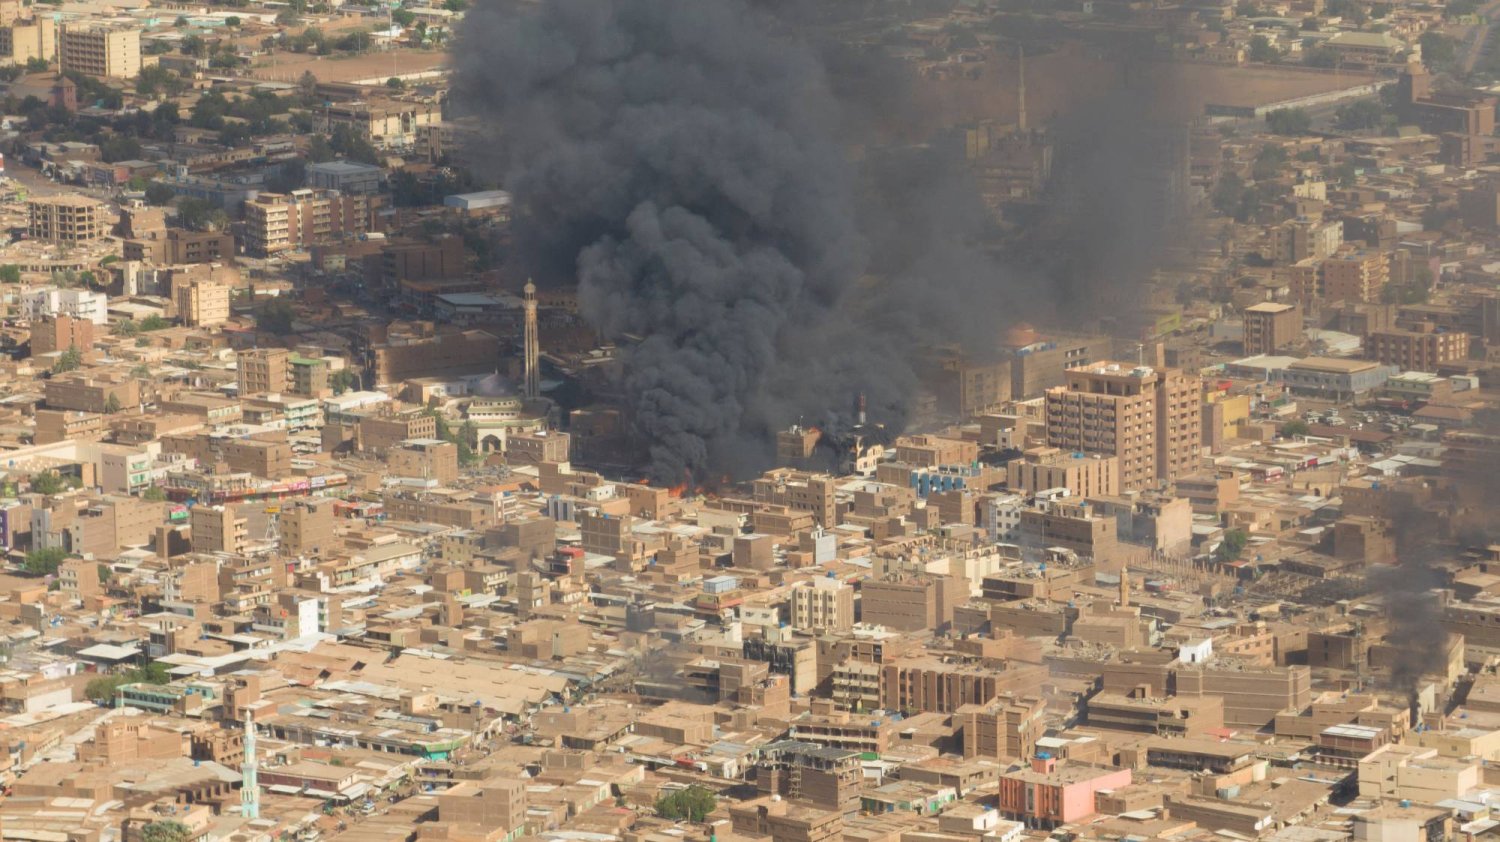 لقطة من فيديو تظهر دخانا أسود وحريقا في سوق مدينة أم درمان بالسودان 15 مايو 2023 (رويترز)